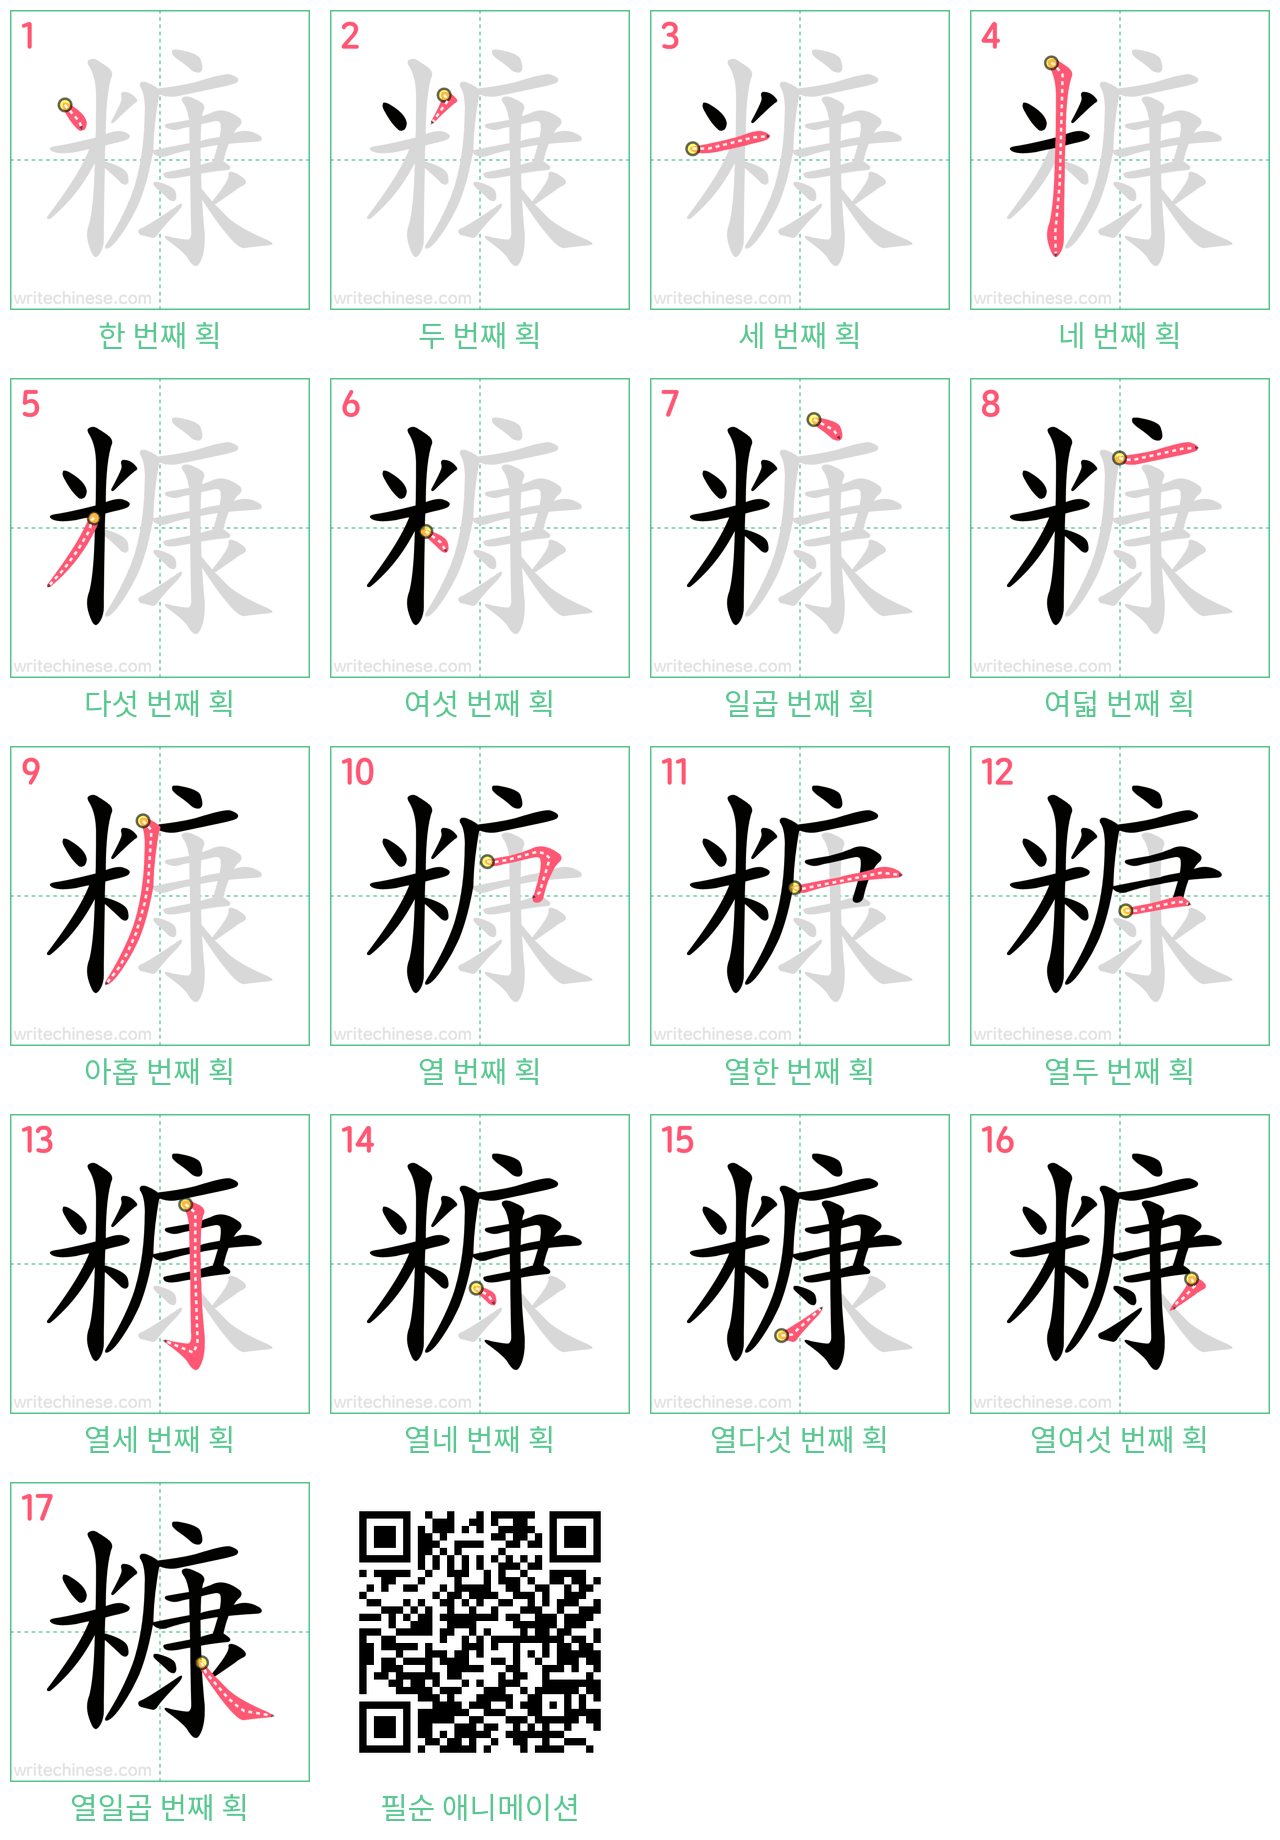 糠 step-by-step stroke order diagrams